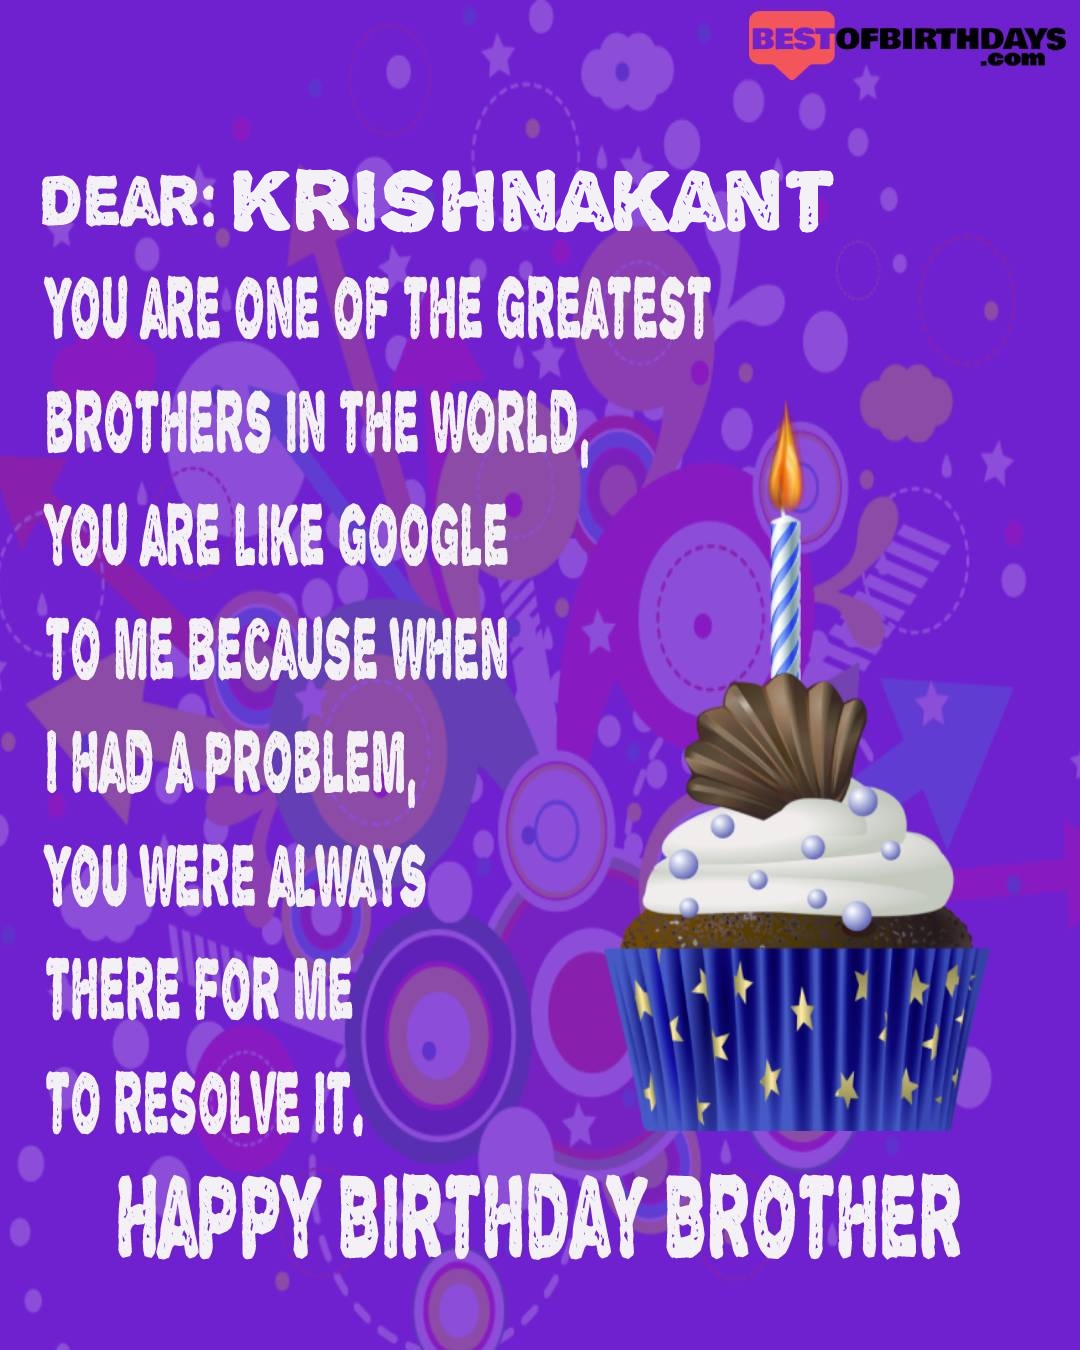 Happy birthday krishnakant bhai brother bro